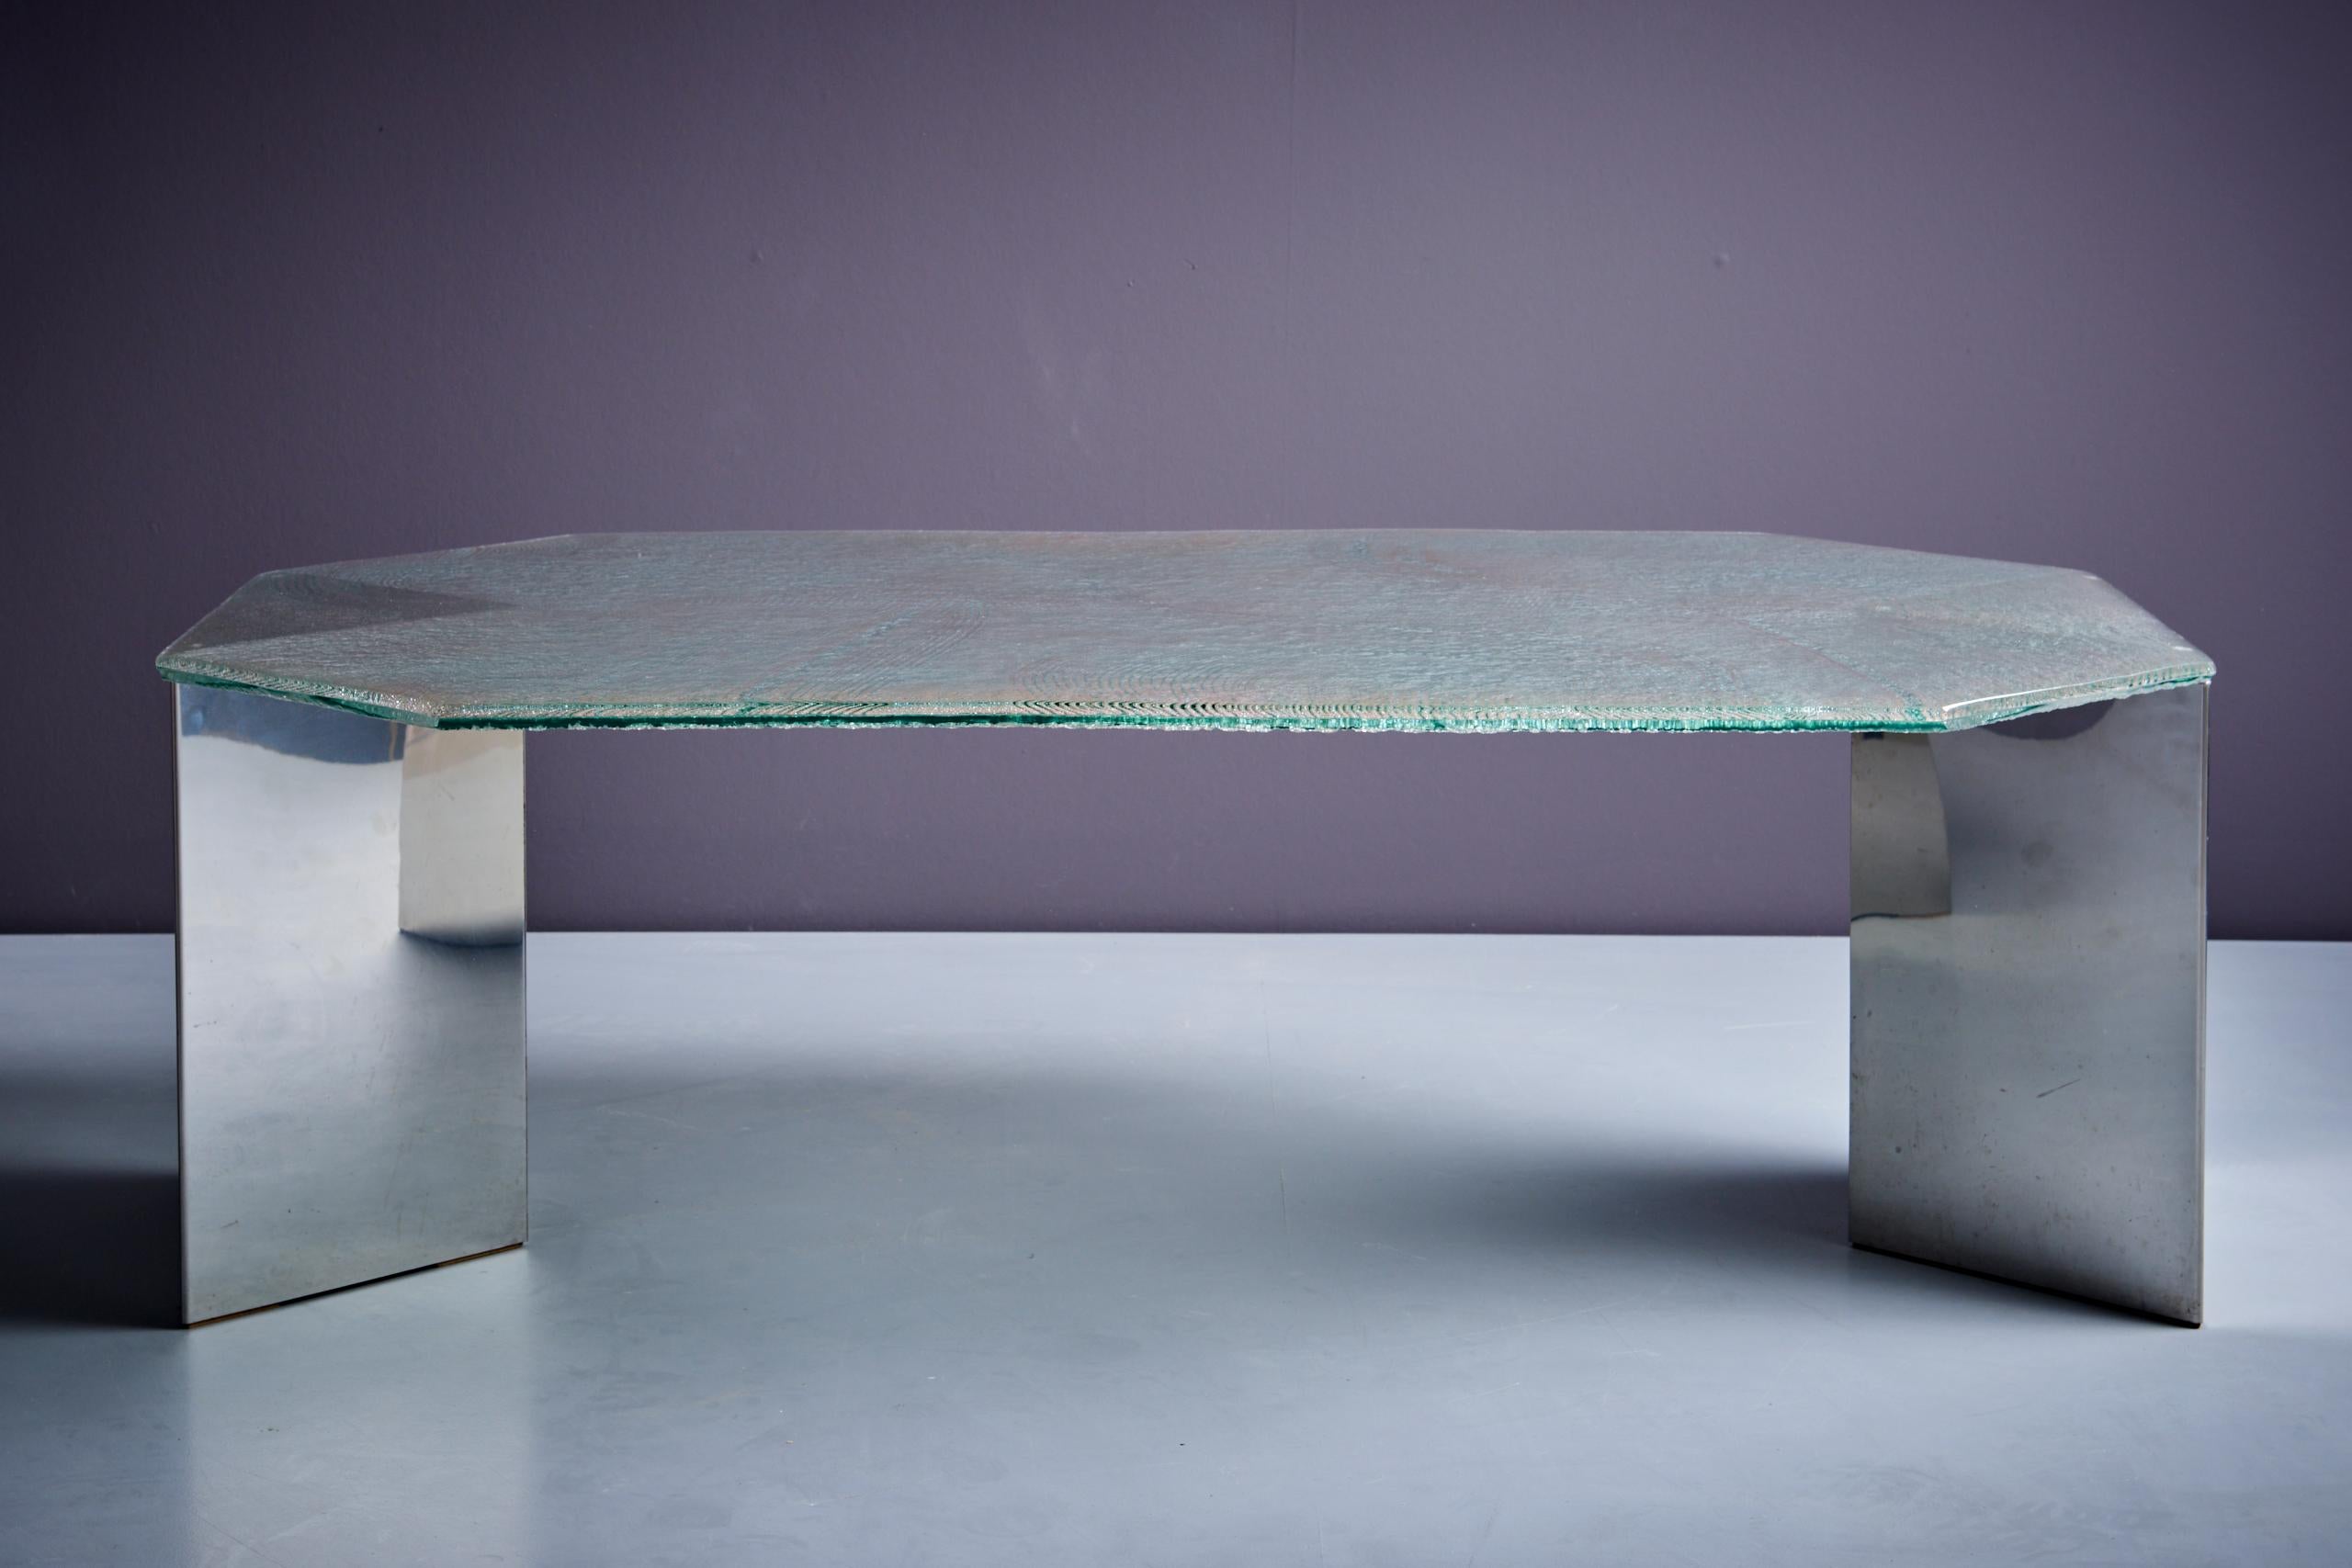 Horst Brüning SG281 Table basse avec base en acier inoxydable et beau plateau en verre en très bon état, Allemagne - 1972.